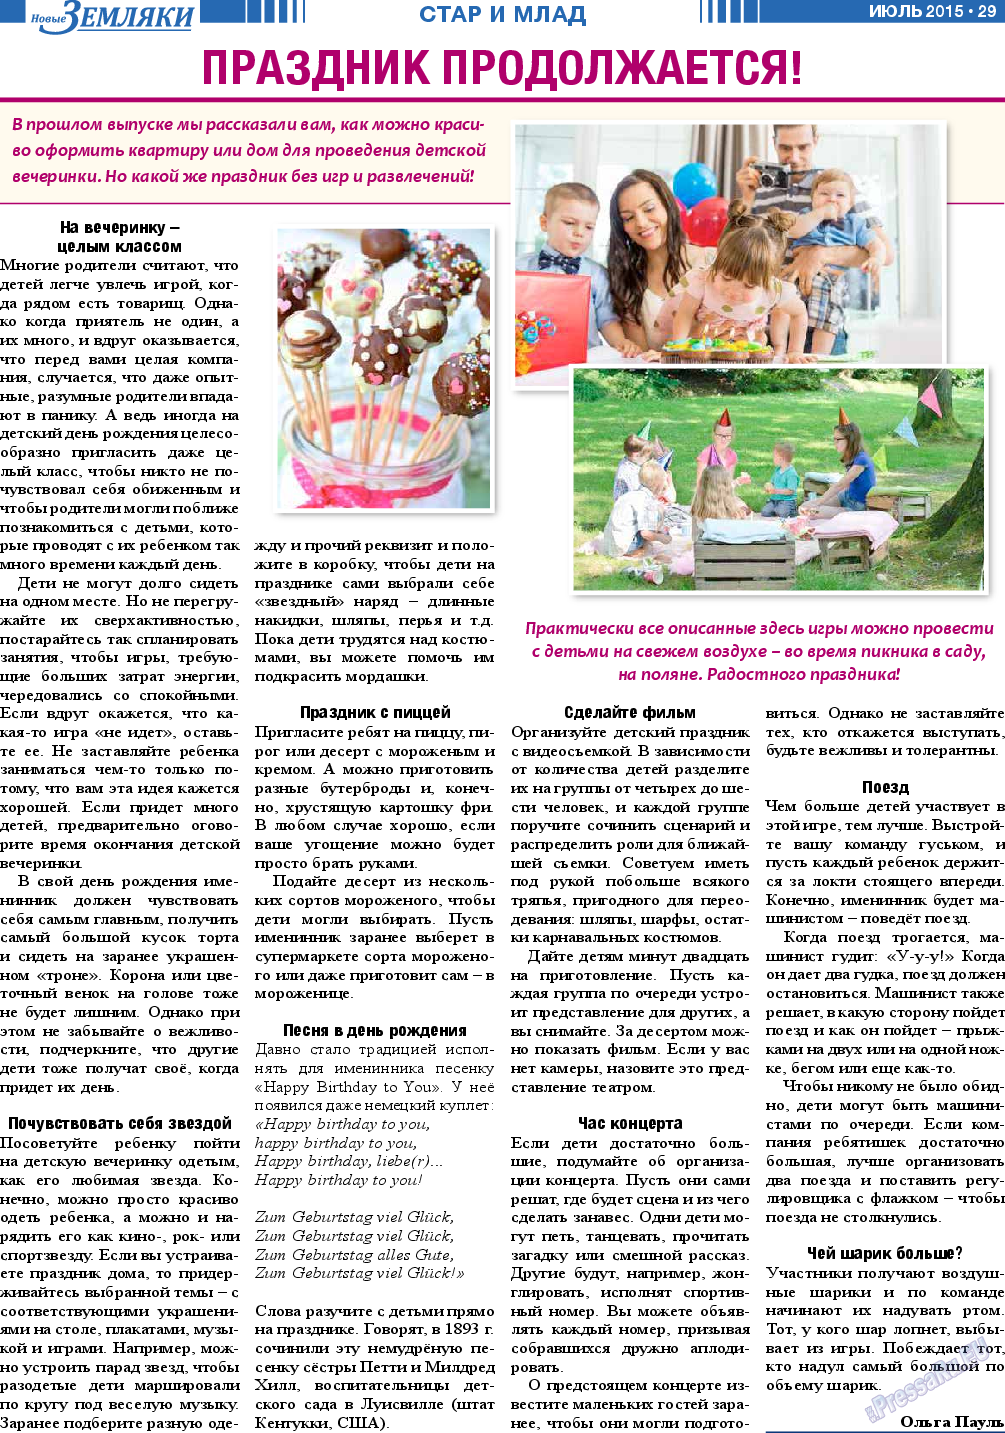 Новые Земляки (газета). 2015 год, номер 7, стр. 29